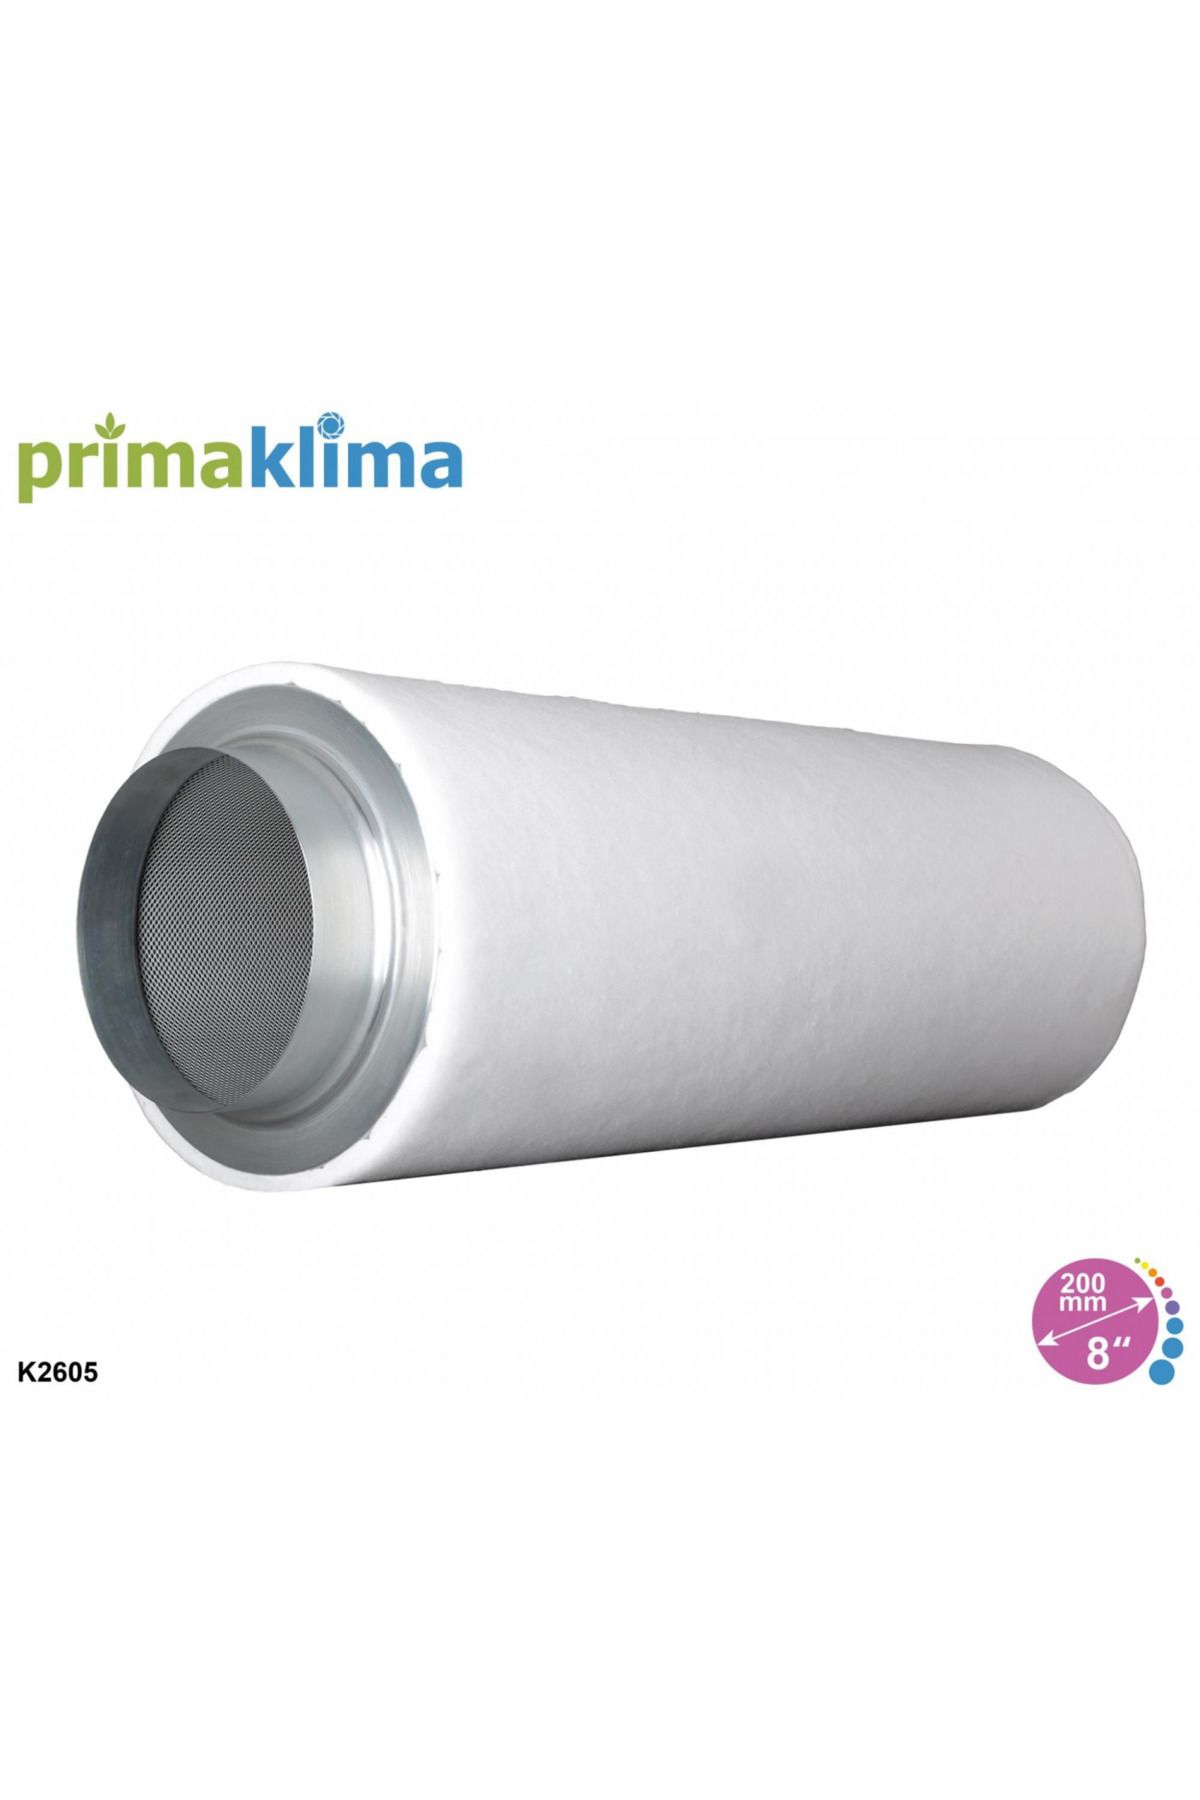 Prima Klima K2605-200 Karbon Filtre (1300m3/h, 200mm Çap)